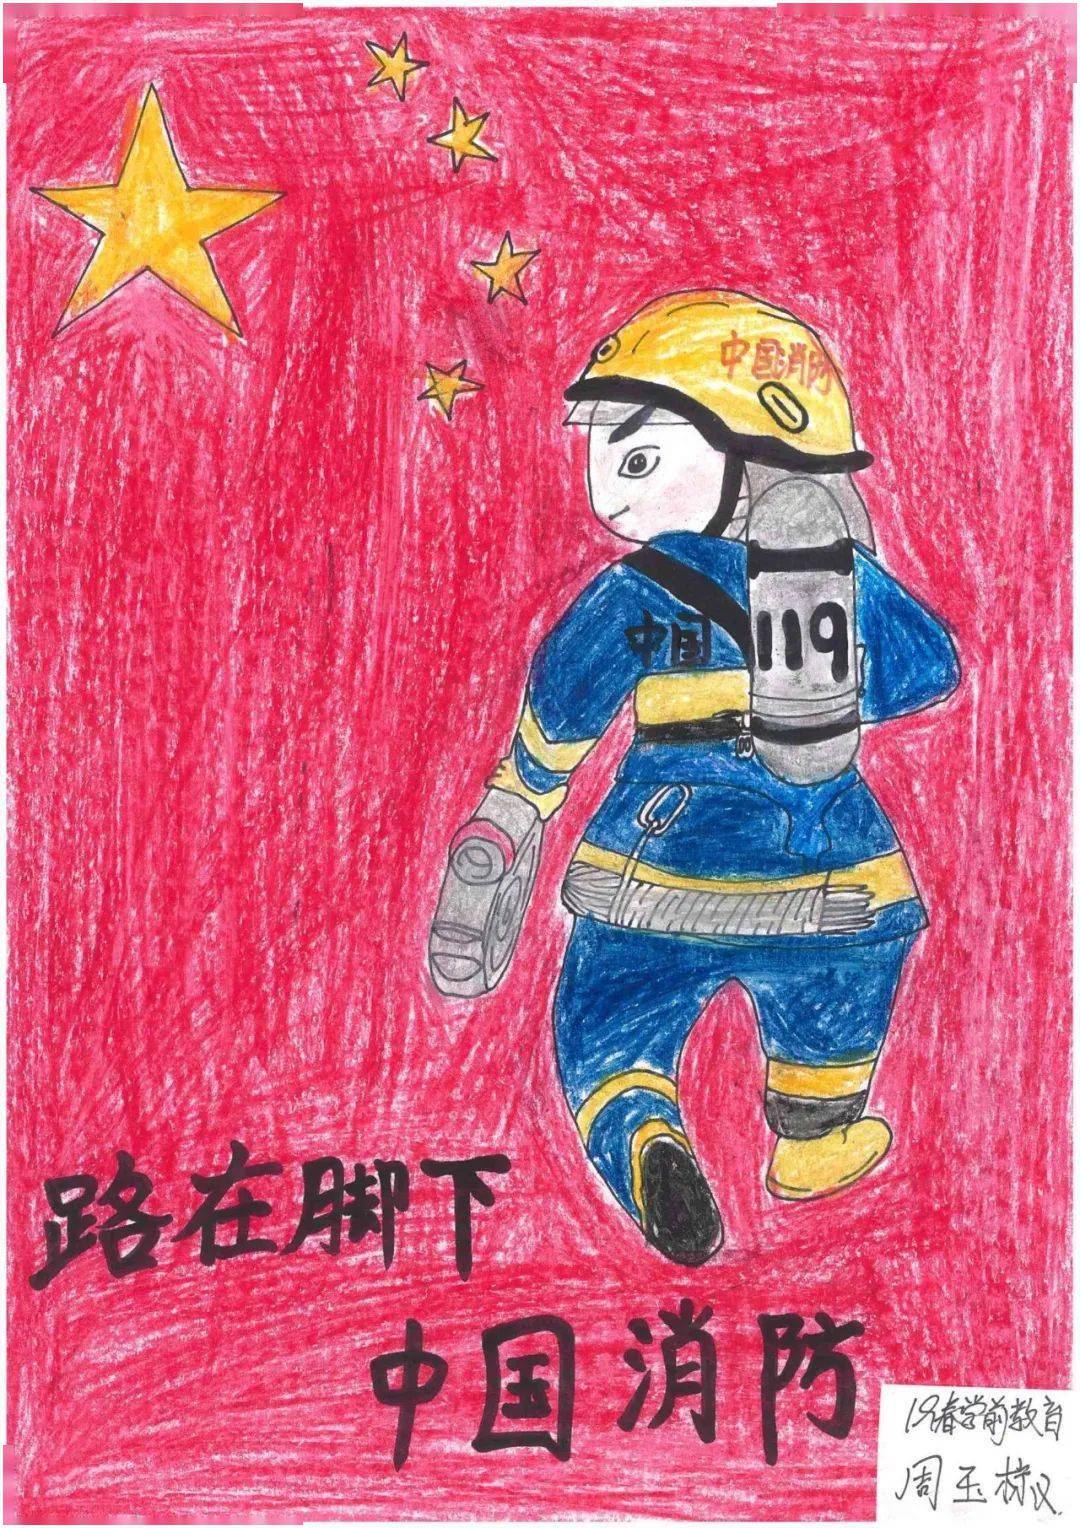 人气投票丨选出你最喜欢的消防绘画作品吧